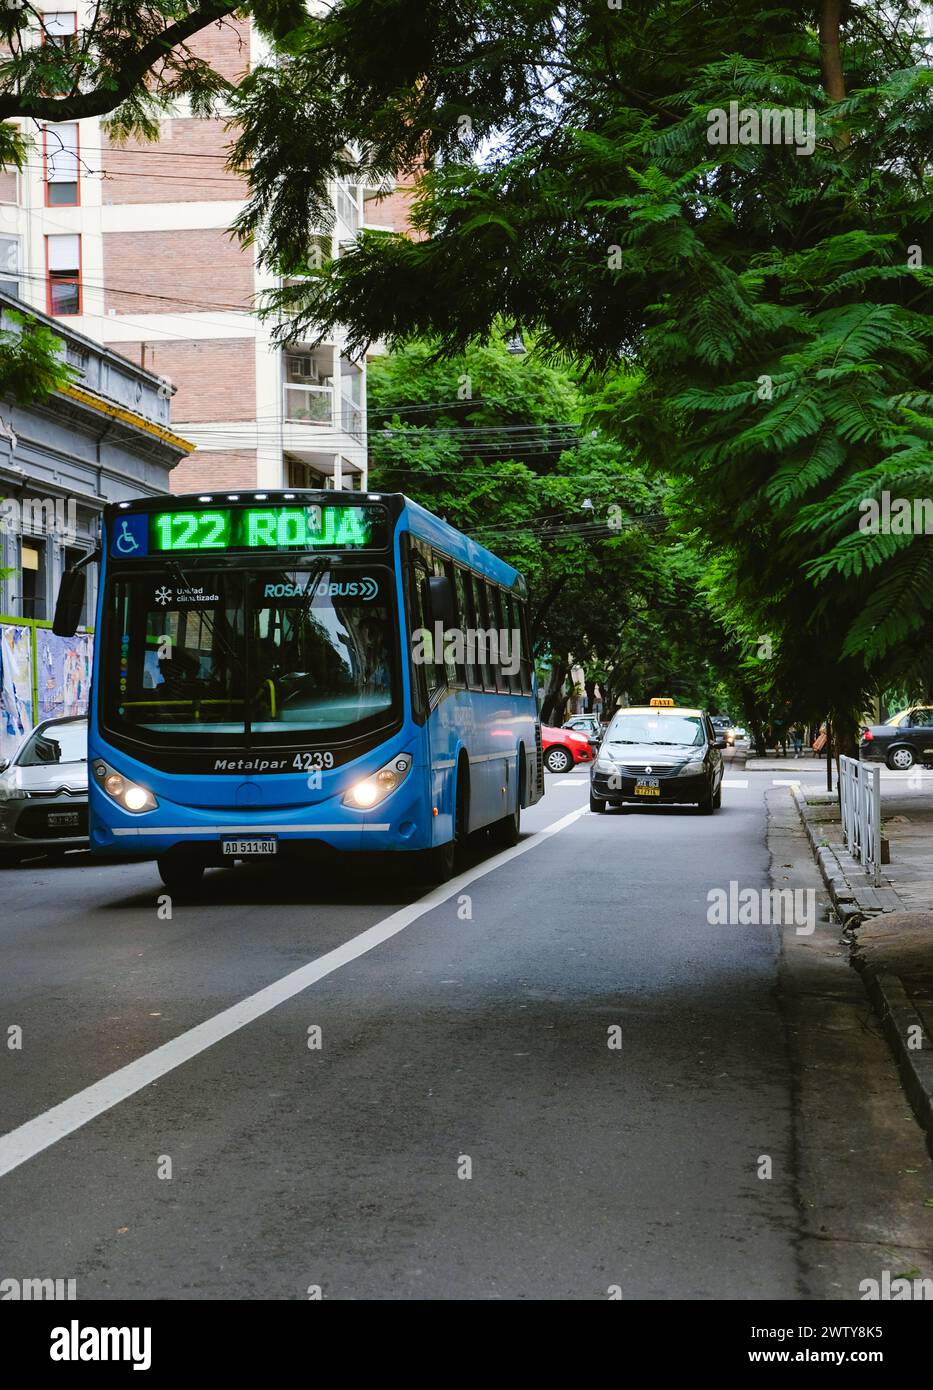 Rosario City bus et Un taxi fonctionnant normalement après la récente vague de violence et de meurtres dus à des substances illégales. Guerre de la drogue à Rosario Banque D'Images